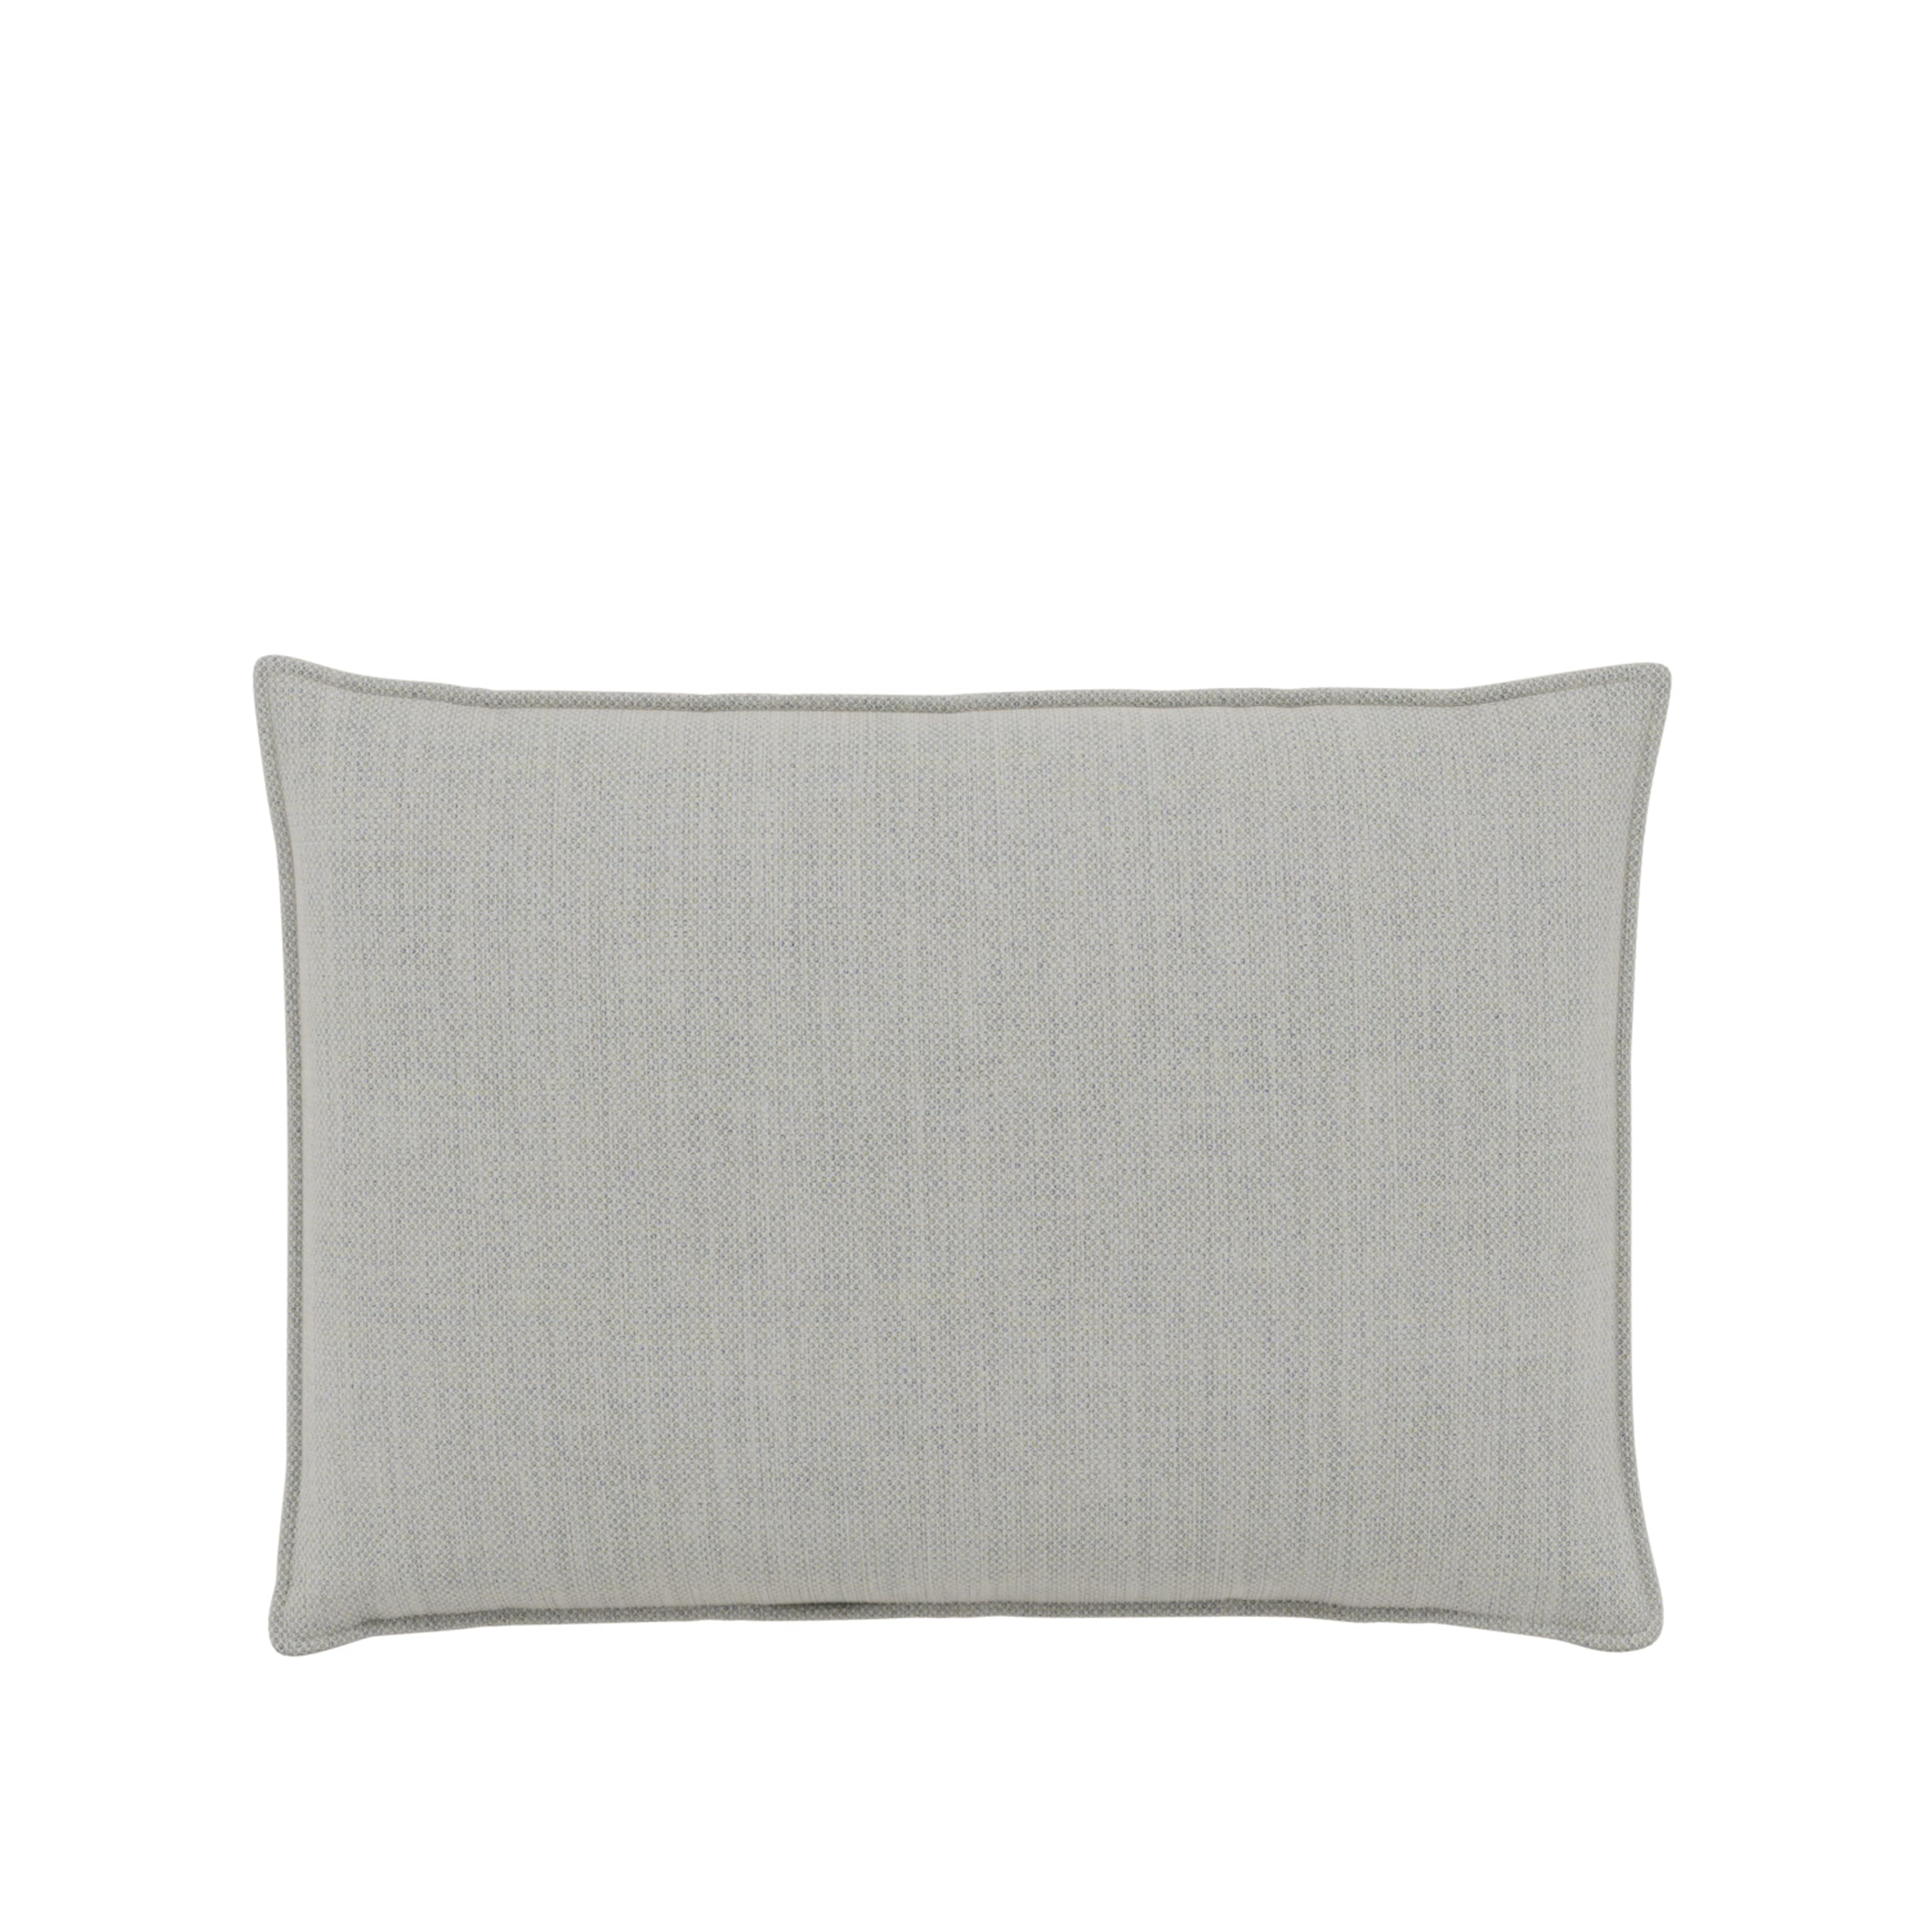 Muuto - Almofada - In Situ Modular Sofa - Cushion - Fabric: Fiord 201